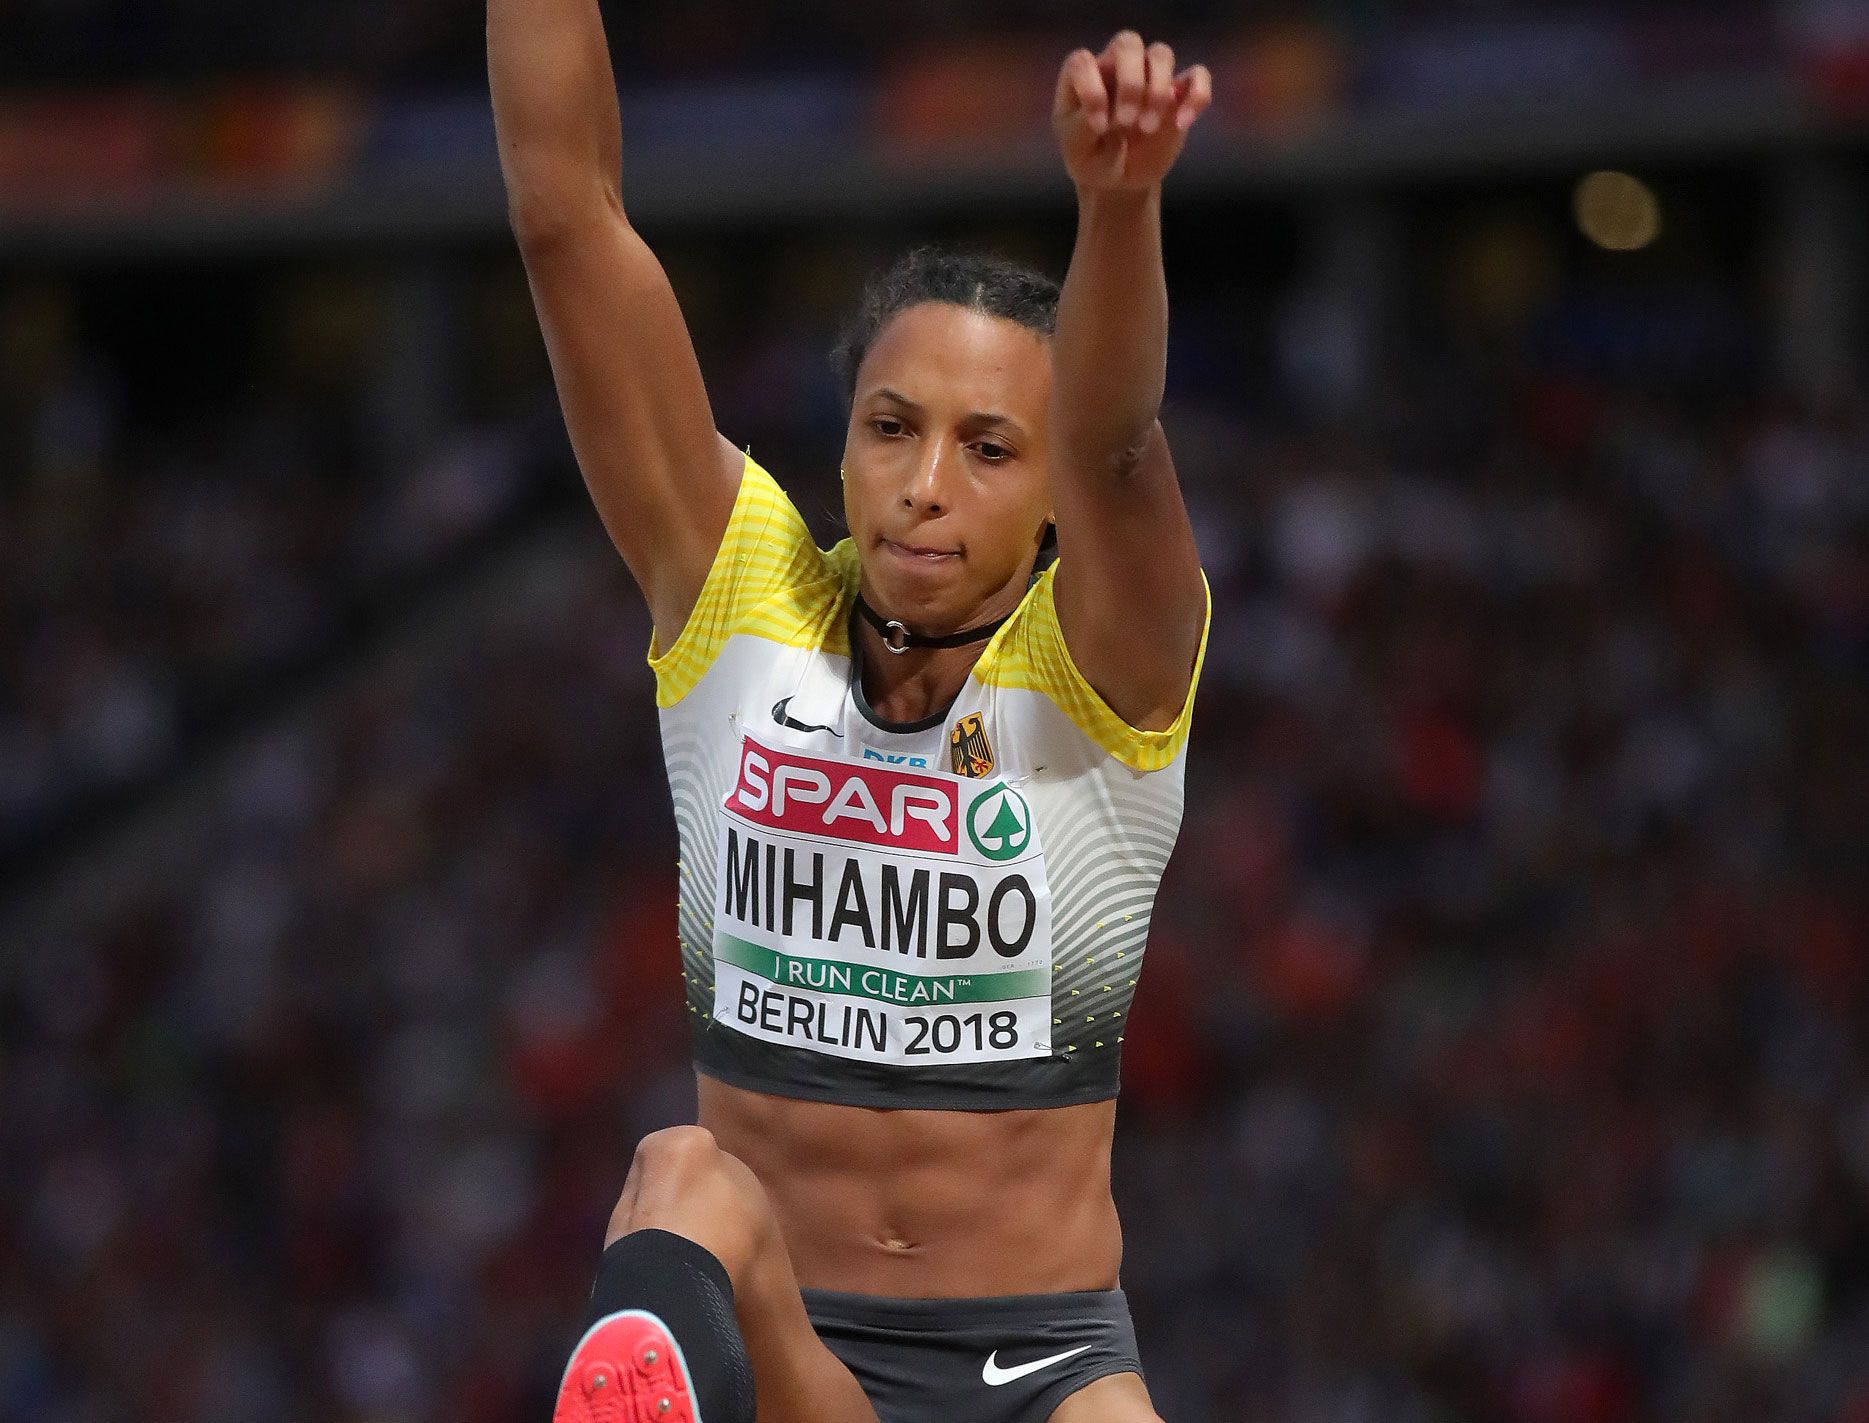 Malaika Mihambo competes at the 2018 European Championships in Berlin